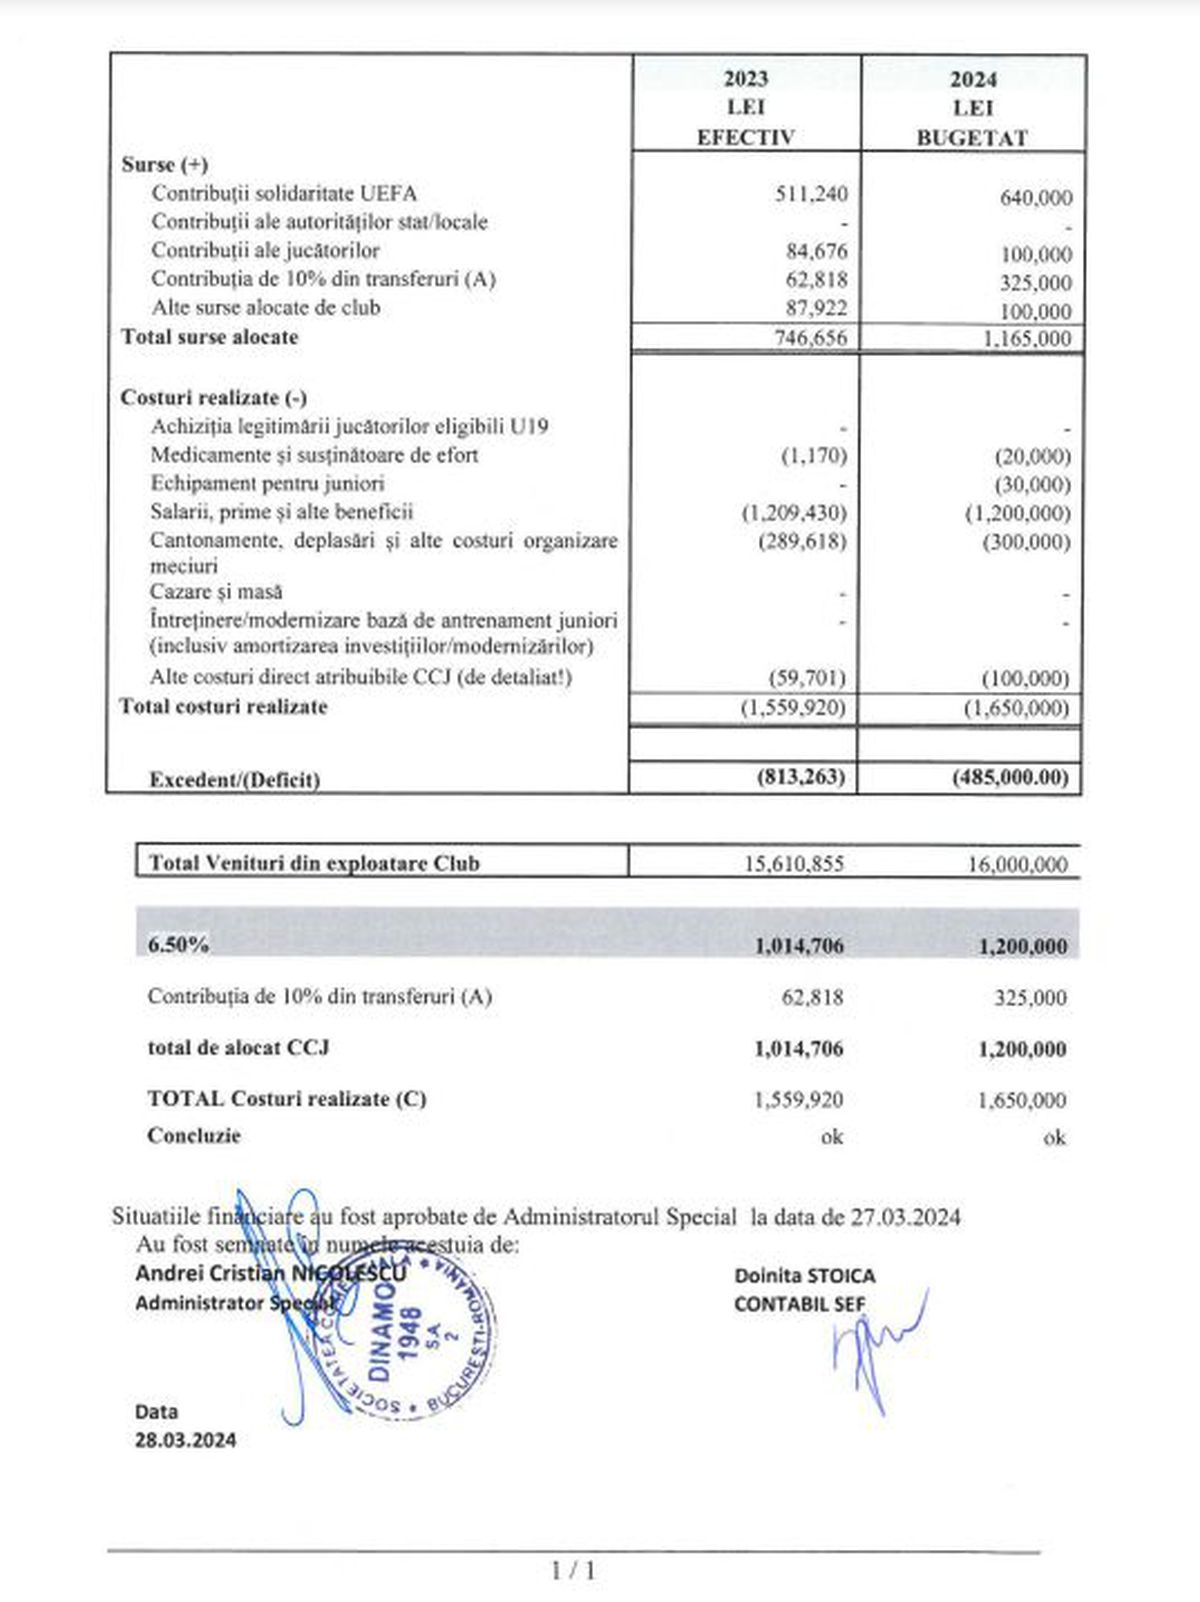 Bilanțul financiar înregistrat de Dinamo în 2023: cifre și situația contabilă a clubului aflat în insolvență